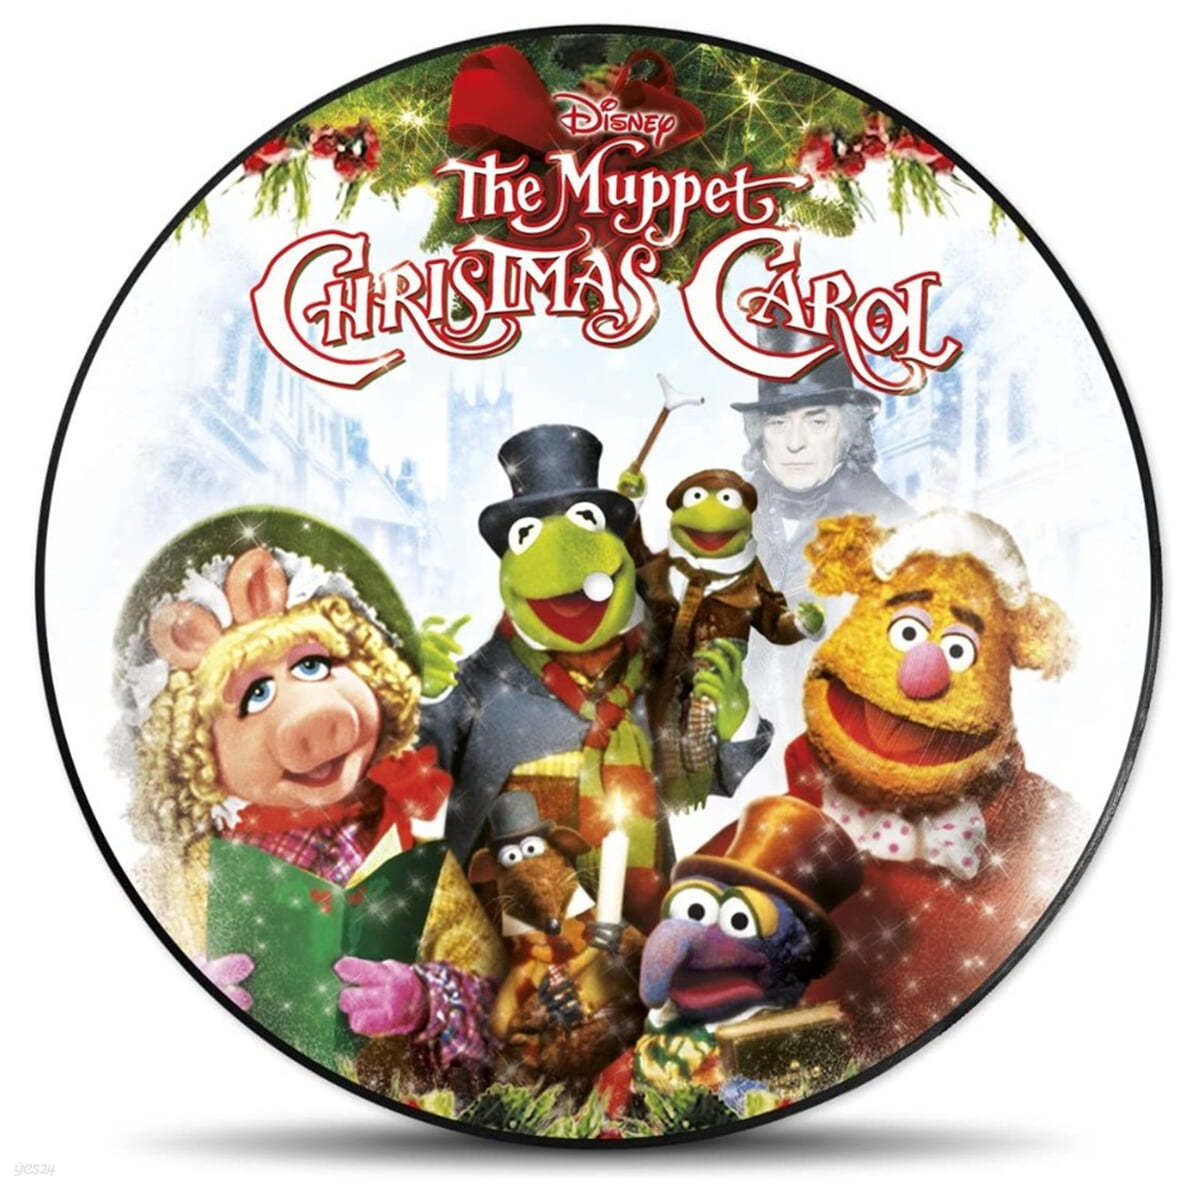 머펫의 크리스마스 캐럴 영화음악 (The Muppet Christmas Carol OST) [픽쳐디스크 LP]